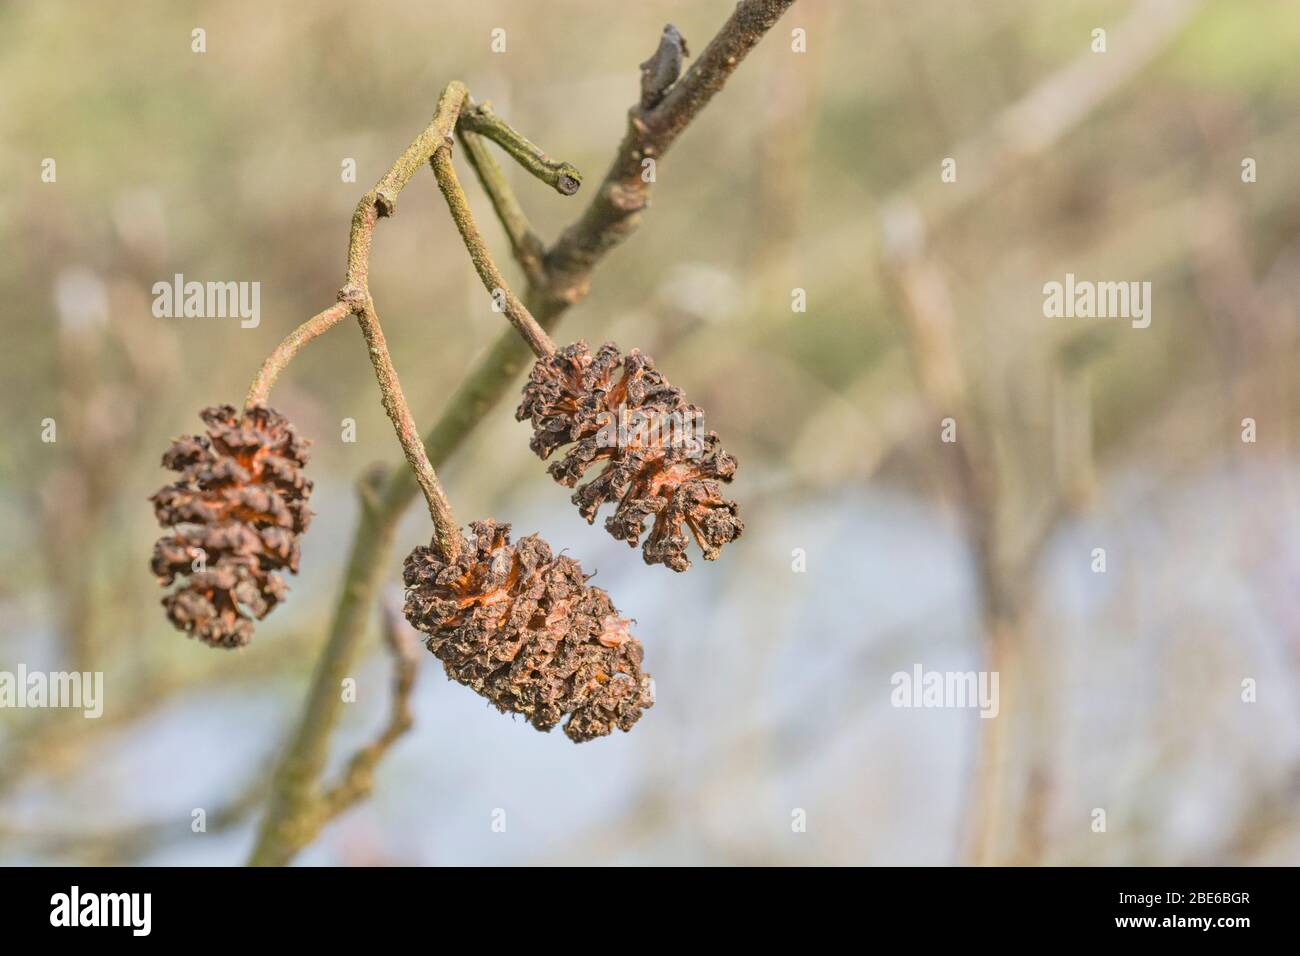 Alte weibliche Kätzchen Kegel Früchte einer Erle / Alnus glutinosa Baum im Frühling Sonnenschein. Erle einmal als Heilpflanze in pflanzlichen Heilmitteln verwendet. Stockfoto